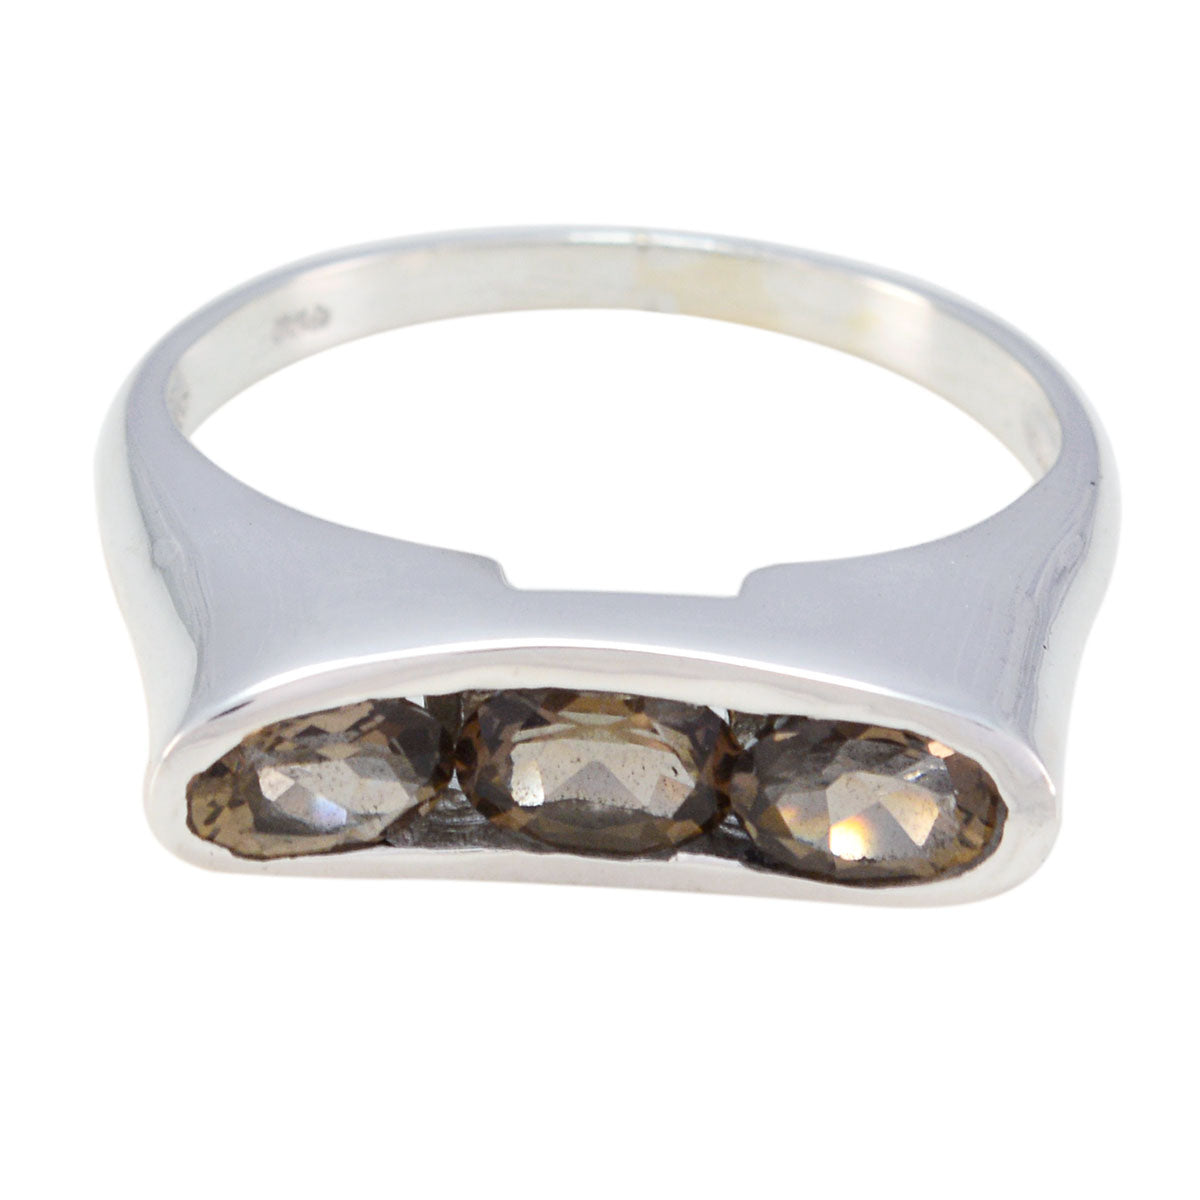 Sublieme edelstenen rookkwarts sterling zilveren ring sieraden gereedschap